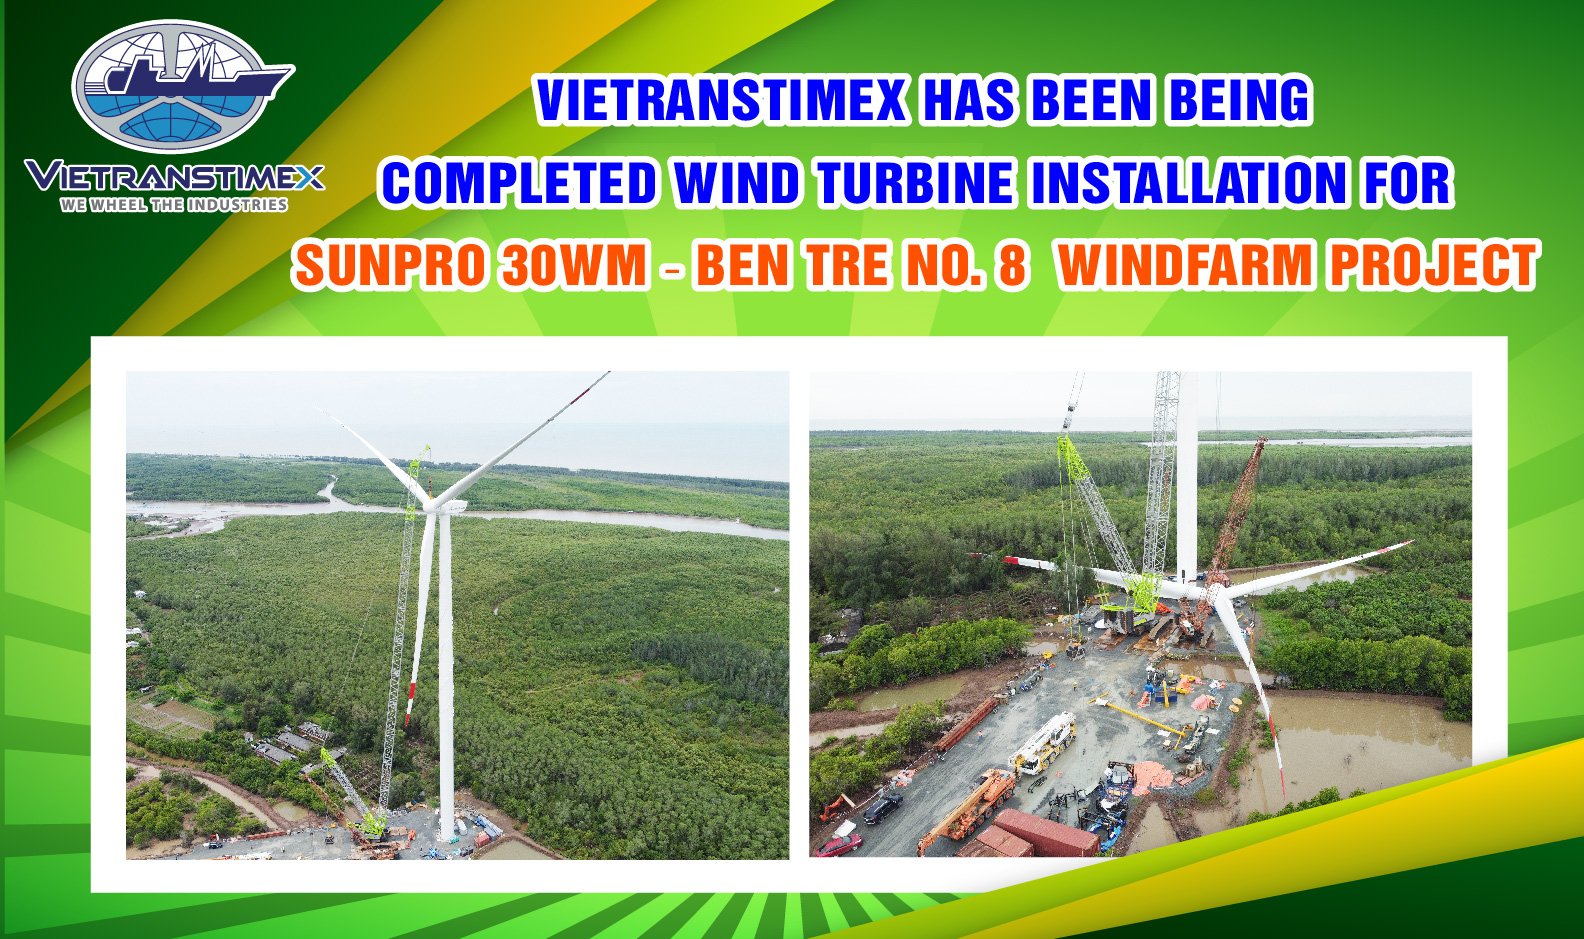 Vietranstimex Đang Hoàn Tất Những Trụ Turbine Gió Cuối Cùng Của Dự Án Nhà Máy Điện Gió Sunpro 8 – Bến Tre